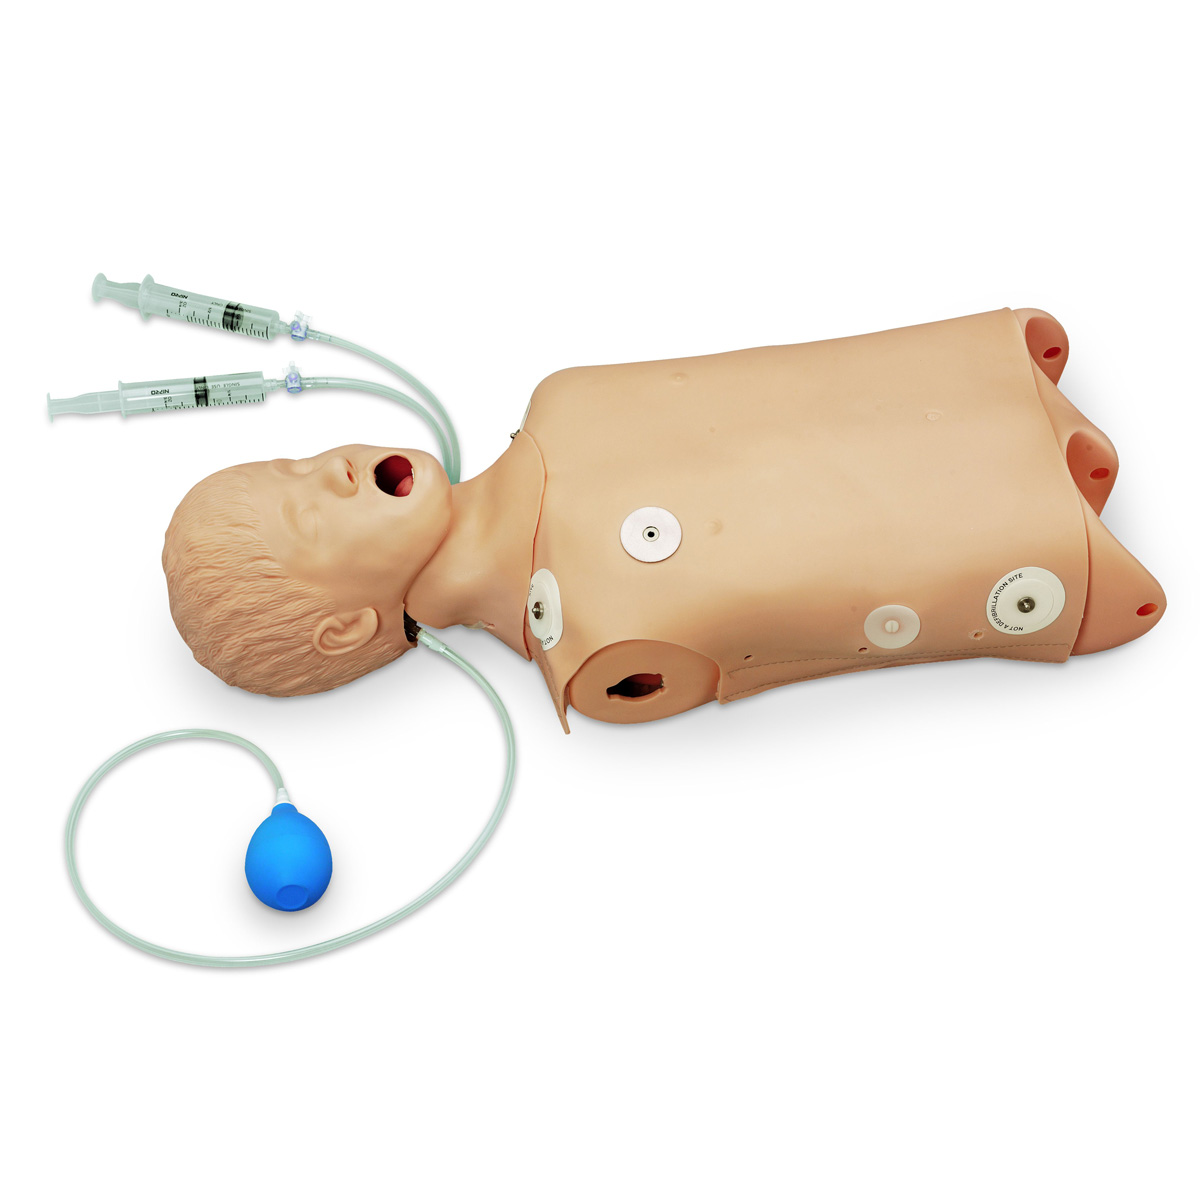 Тренажер туловища ребенка для СЛР/отработки навыков восстановления проходимости дыхательных путей с возможностью проведения дефибрилляции